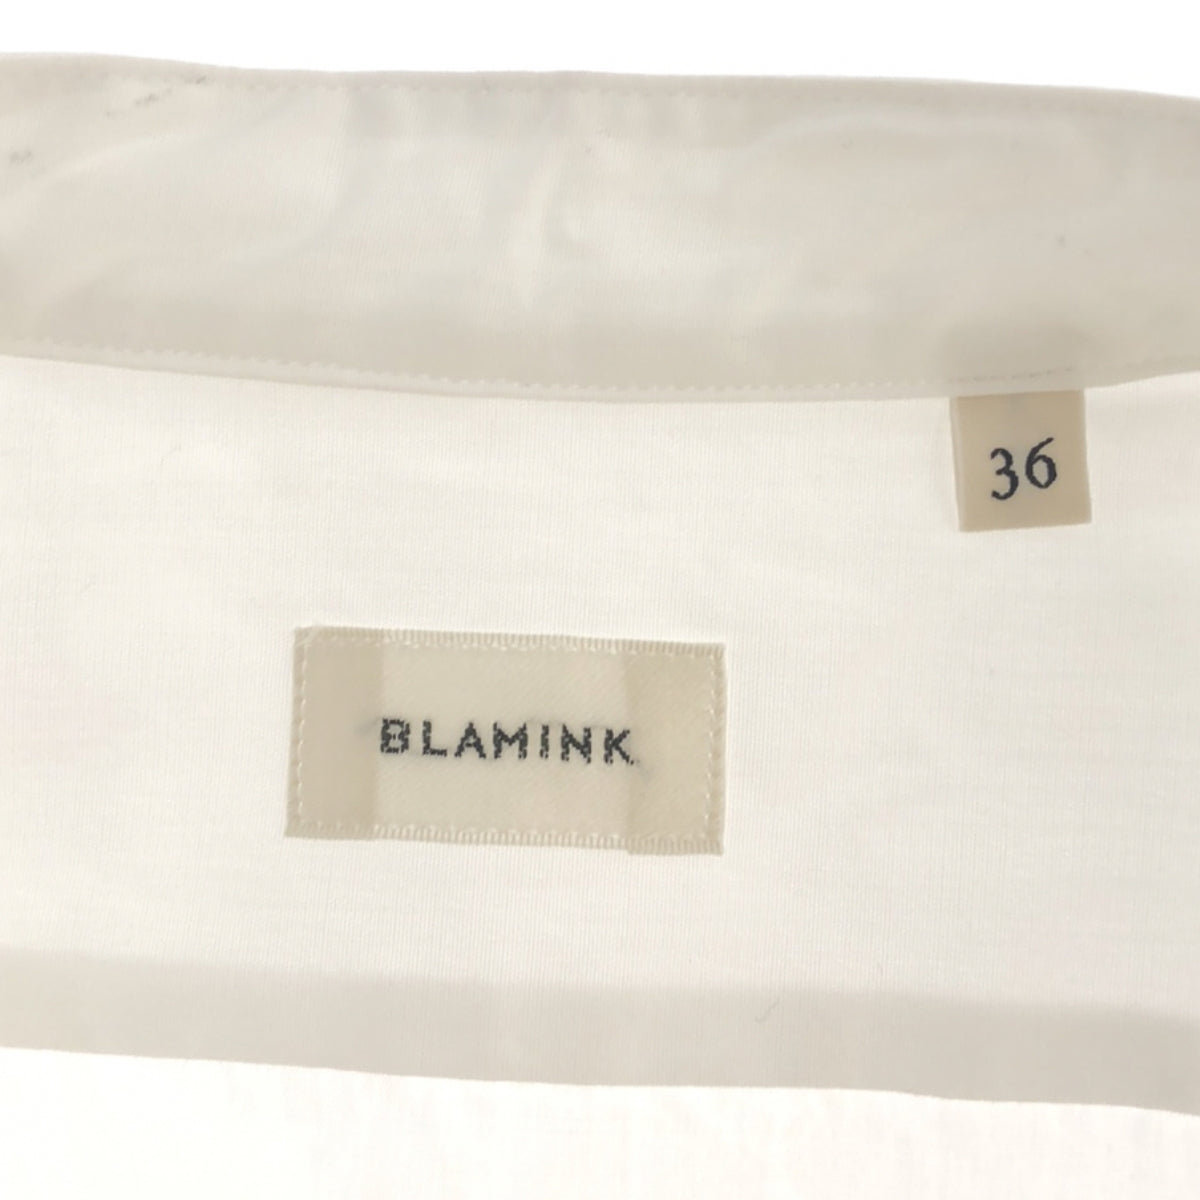 BLAMINK / ブラミンク | コットンバンドカラーシャツ | 36 | ホワイト | レディース